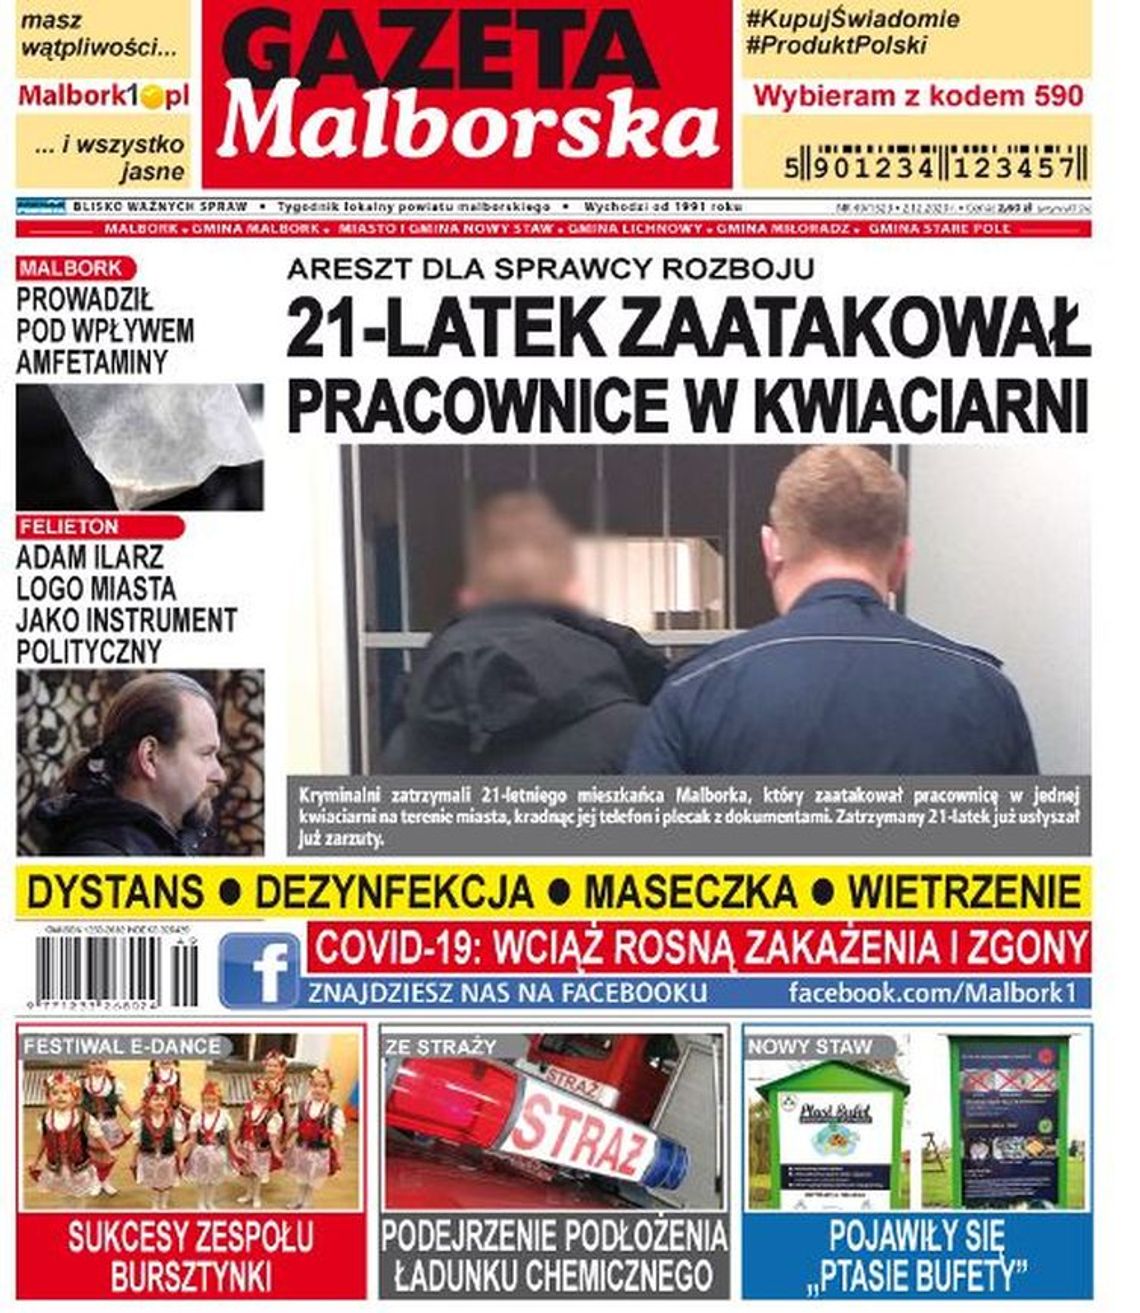 Nowy numer Gazety Malborskiej już w sprzedaży. Świeże wiadomości z naszego miasta i gmin powiatu. O czym piszemy?